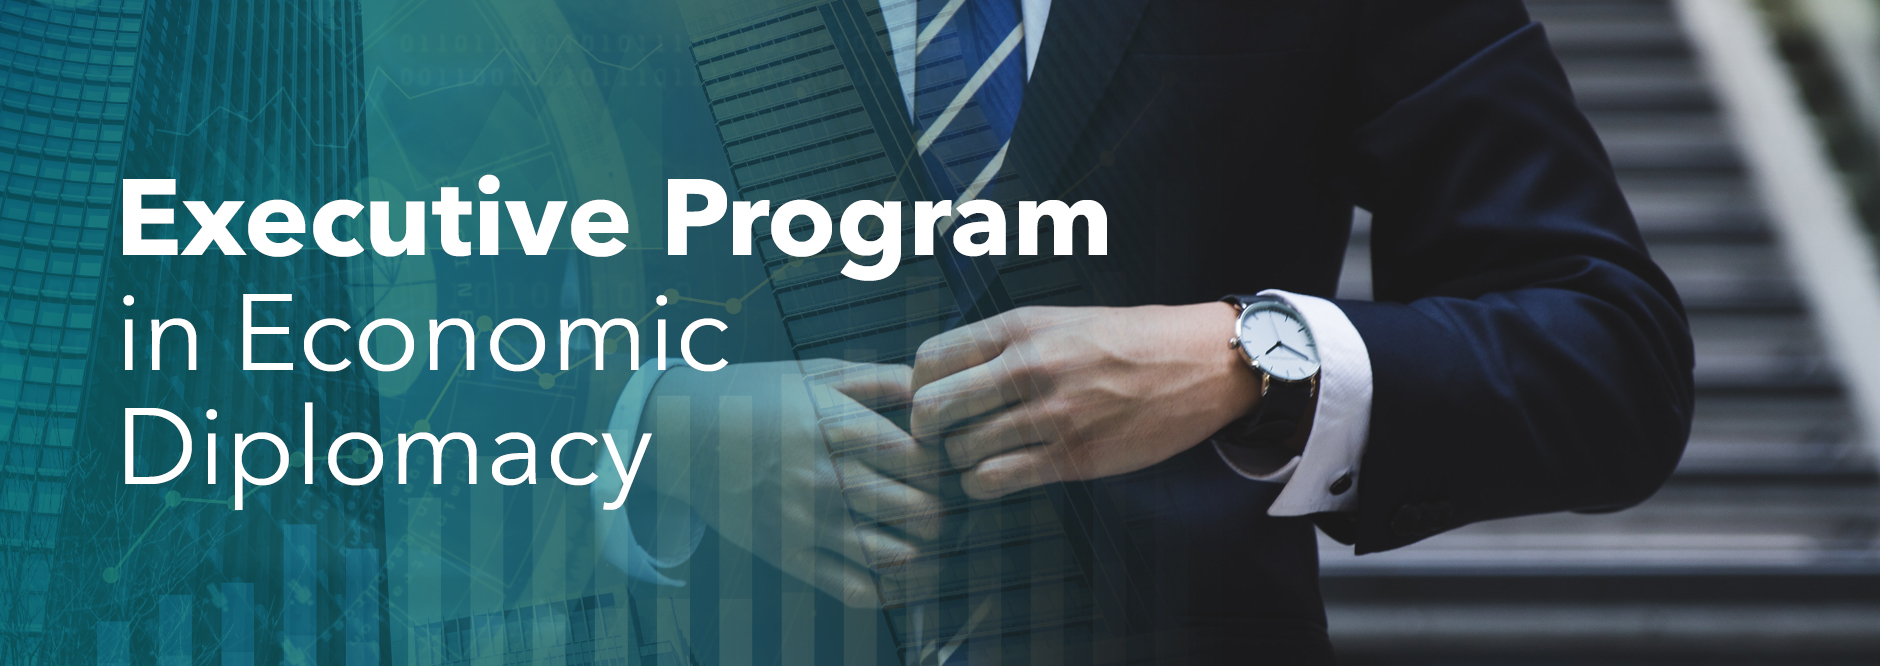 Executive Program in Economic Diplomacy